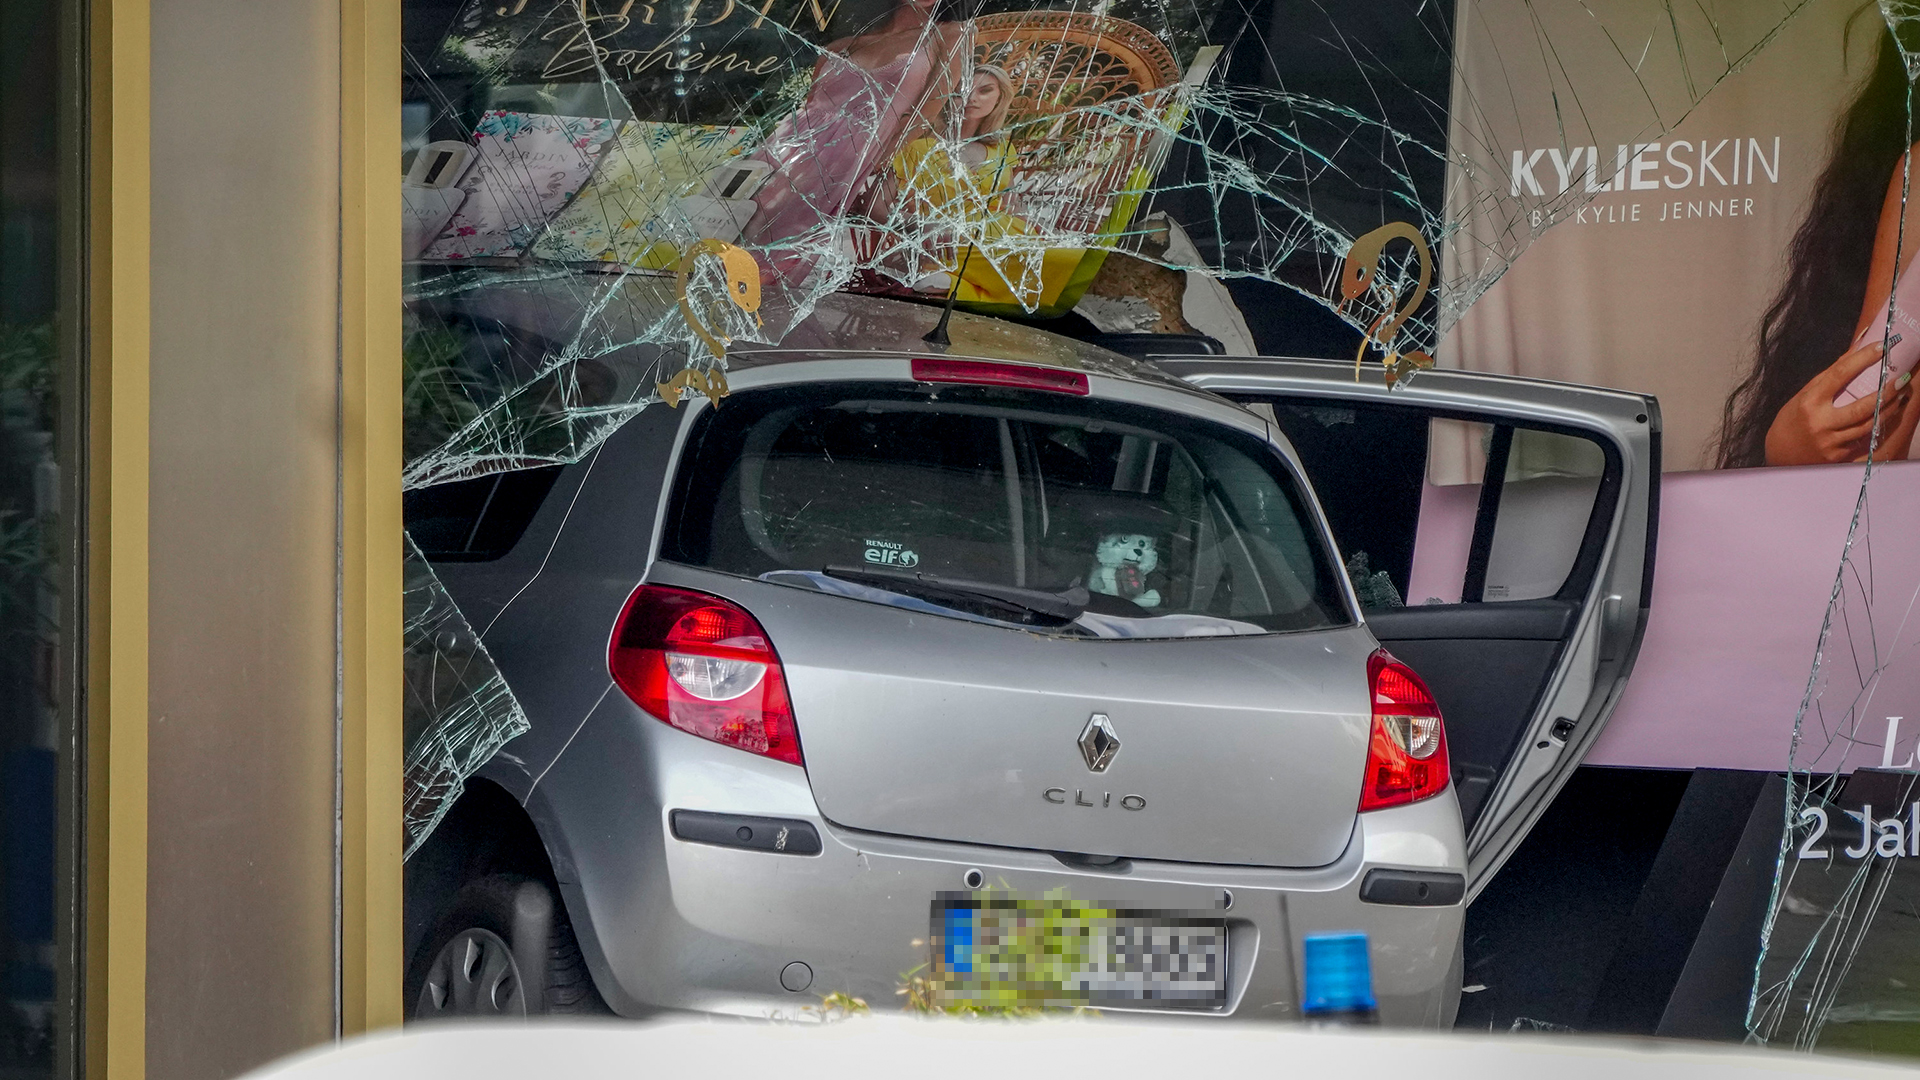 Tödliche Autofahrt in Berlin: Täter soll in Psychiatrie